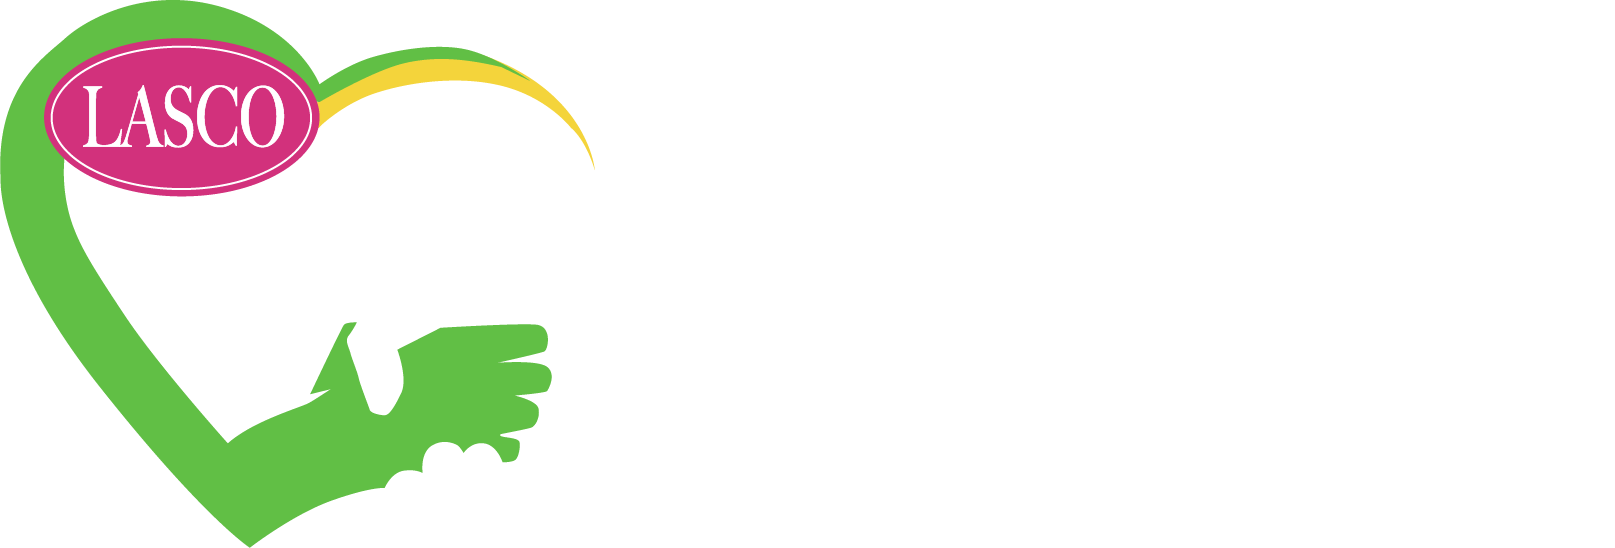 Lasco Chin Foundation